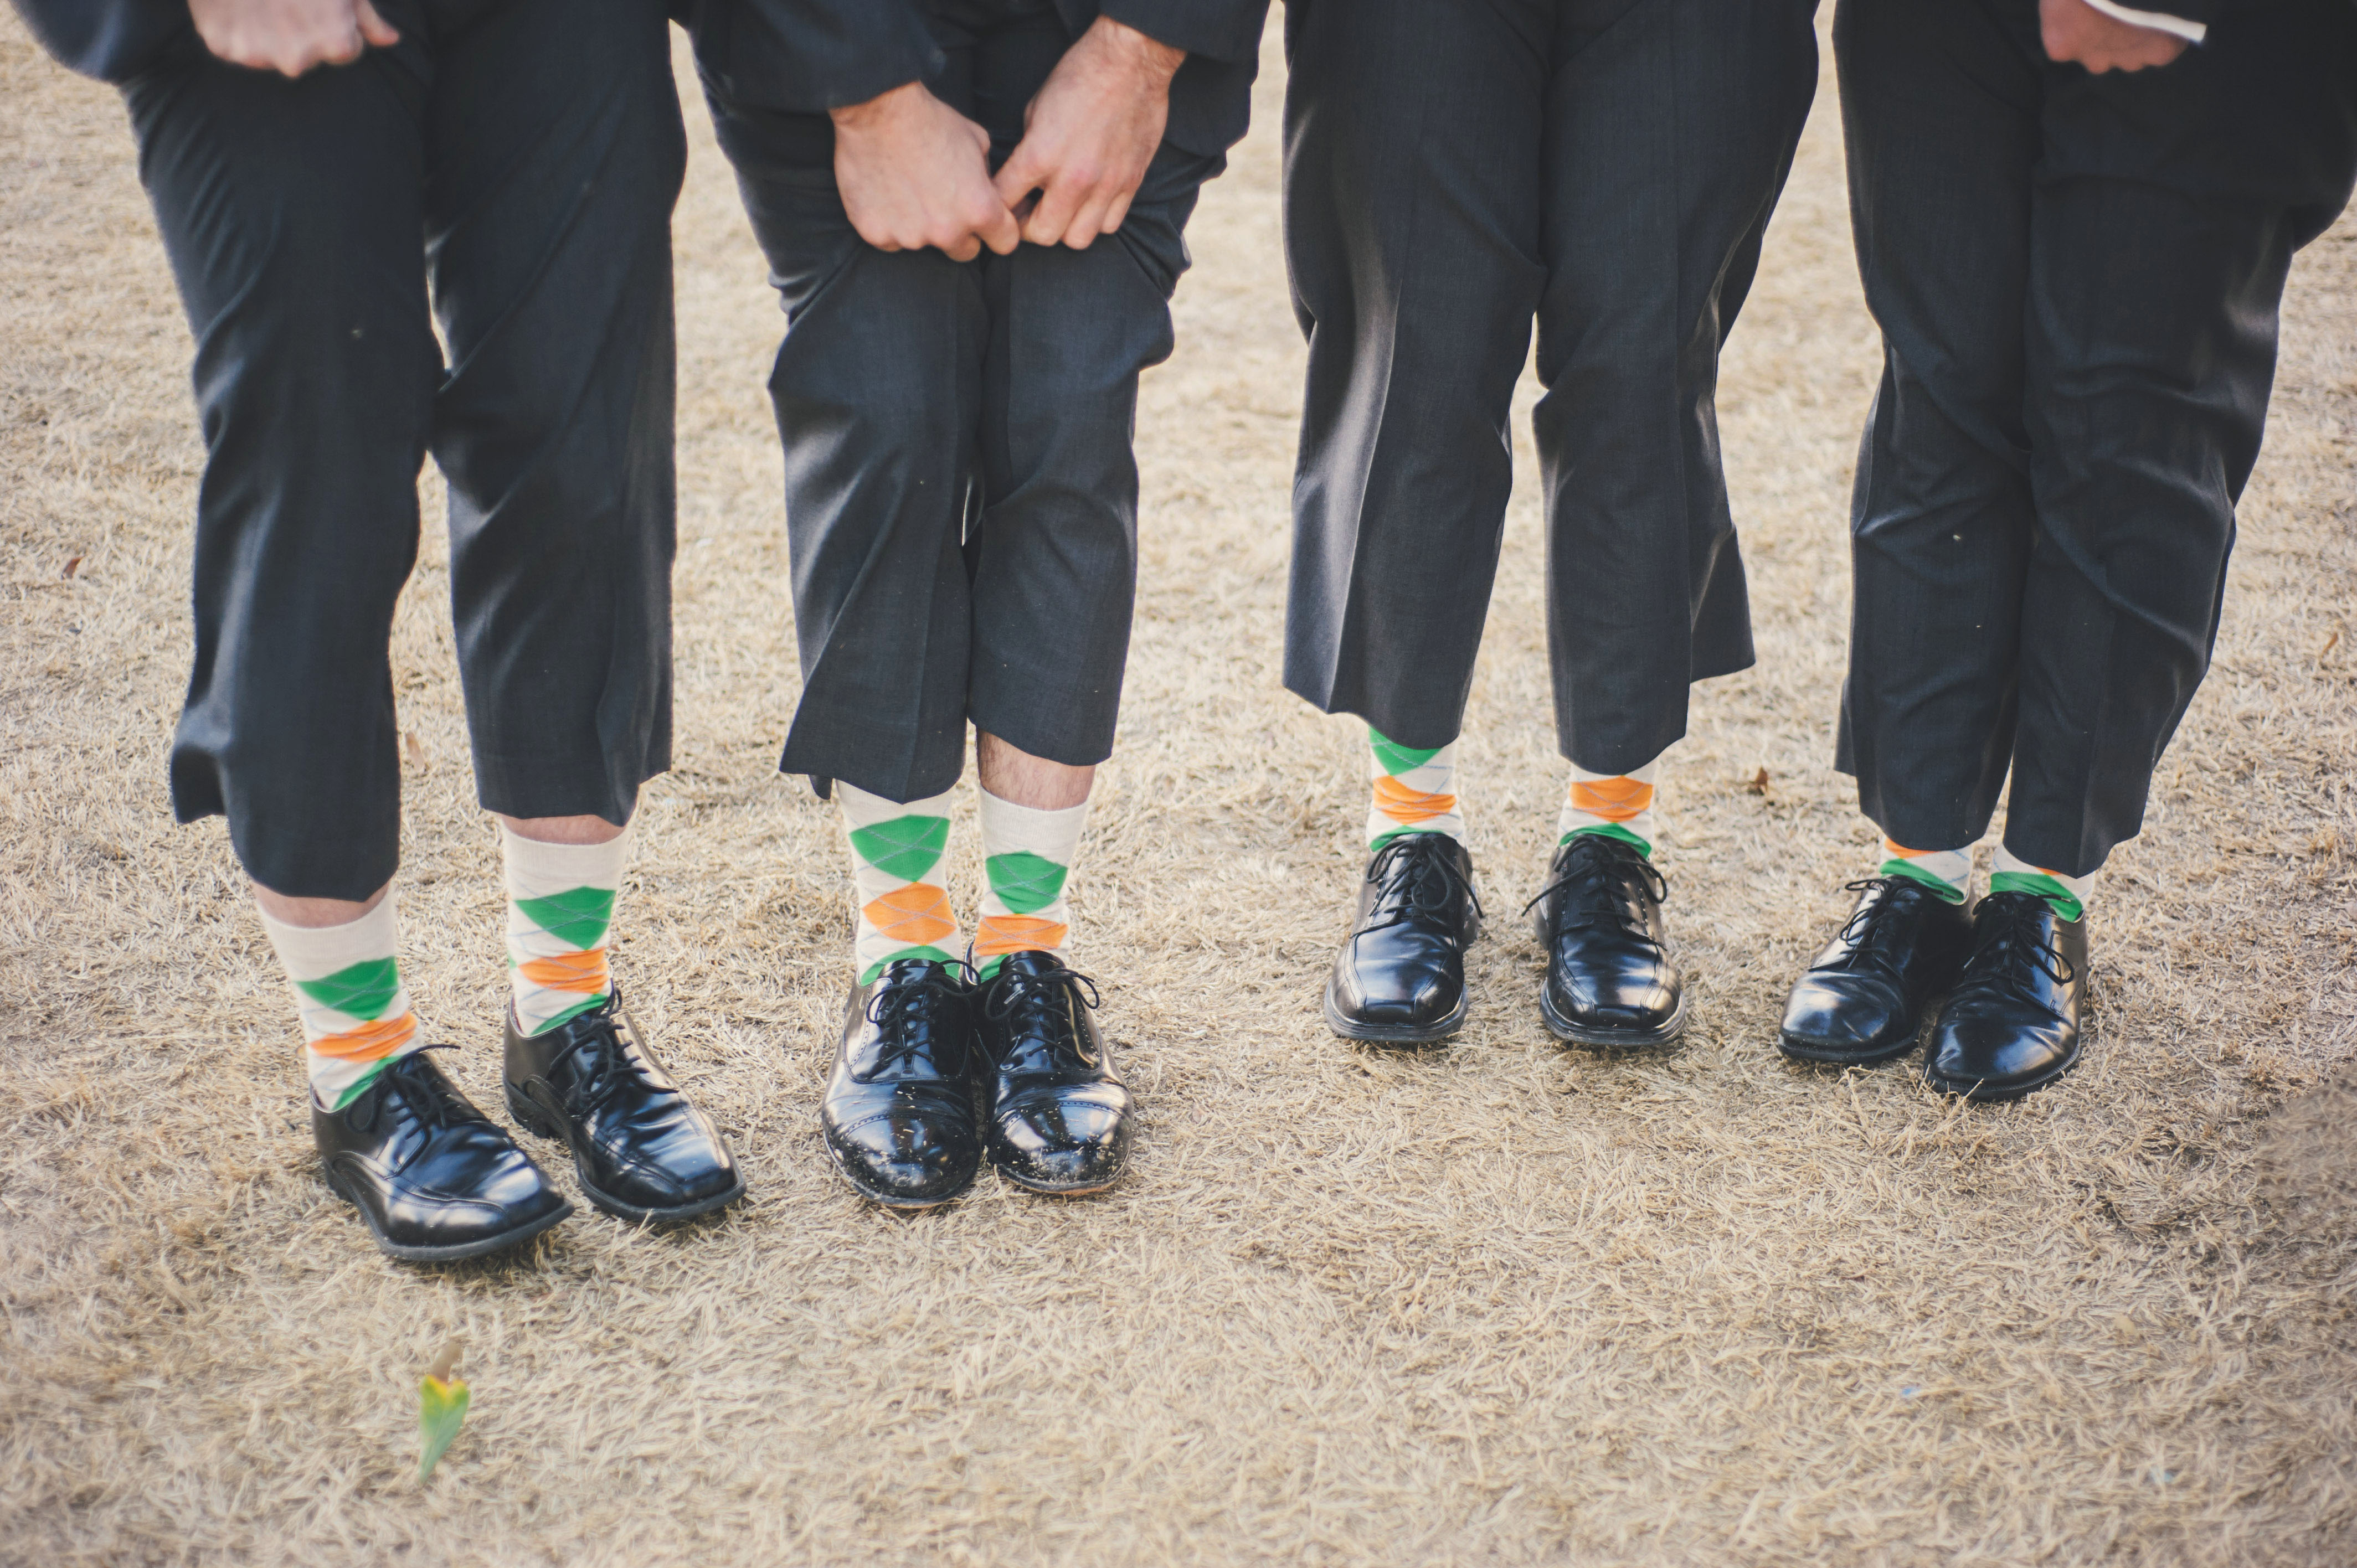  green_orange_socks_for_wedding